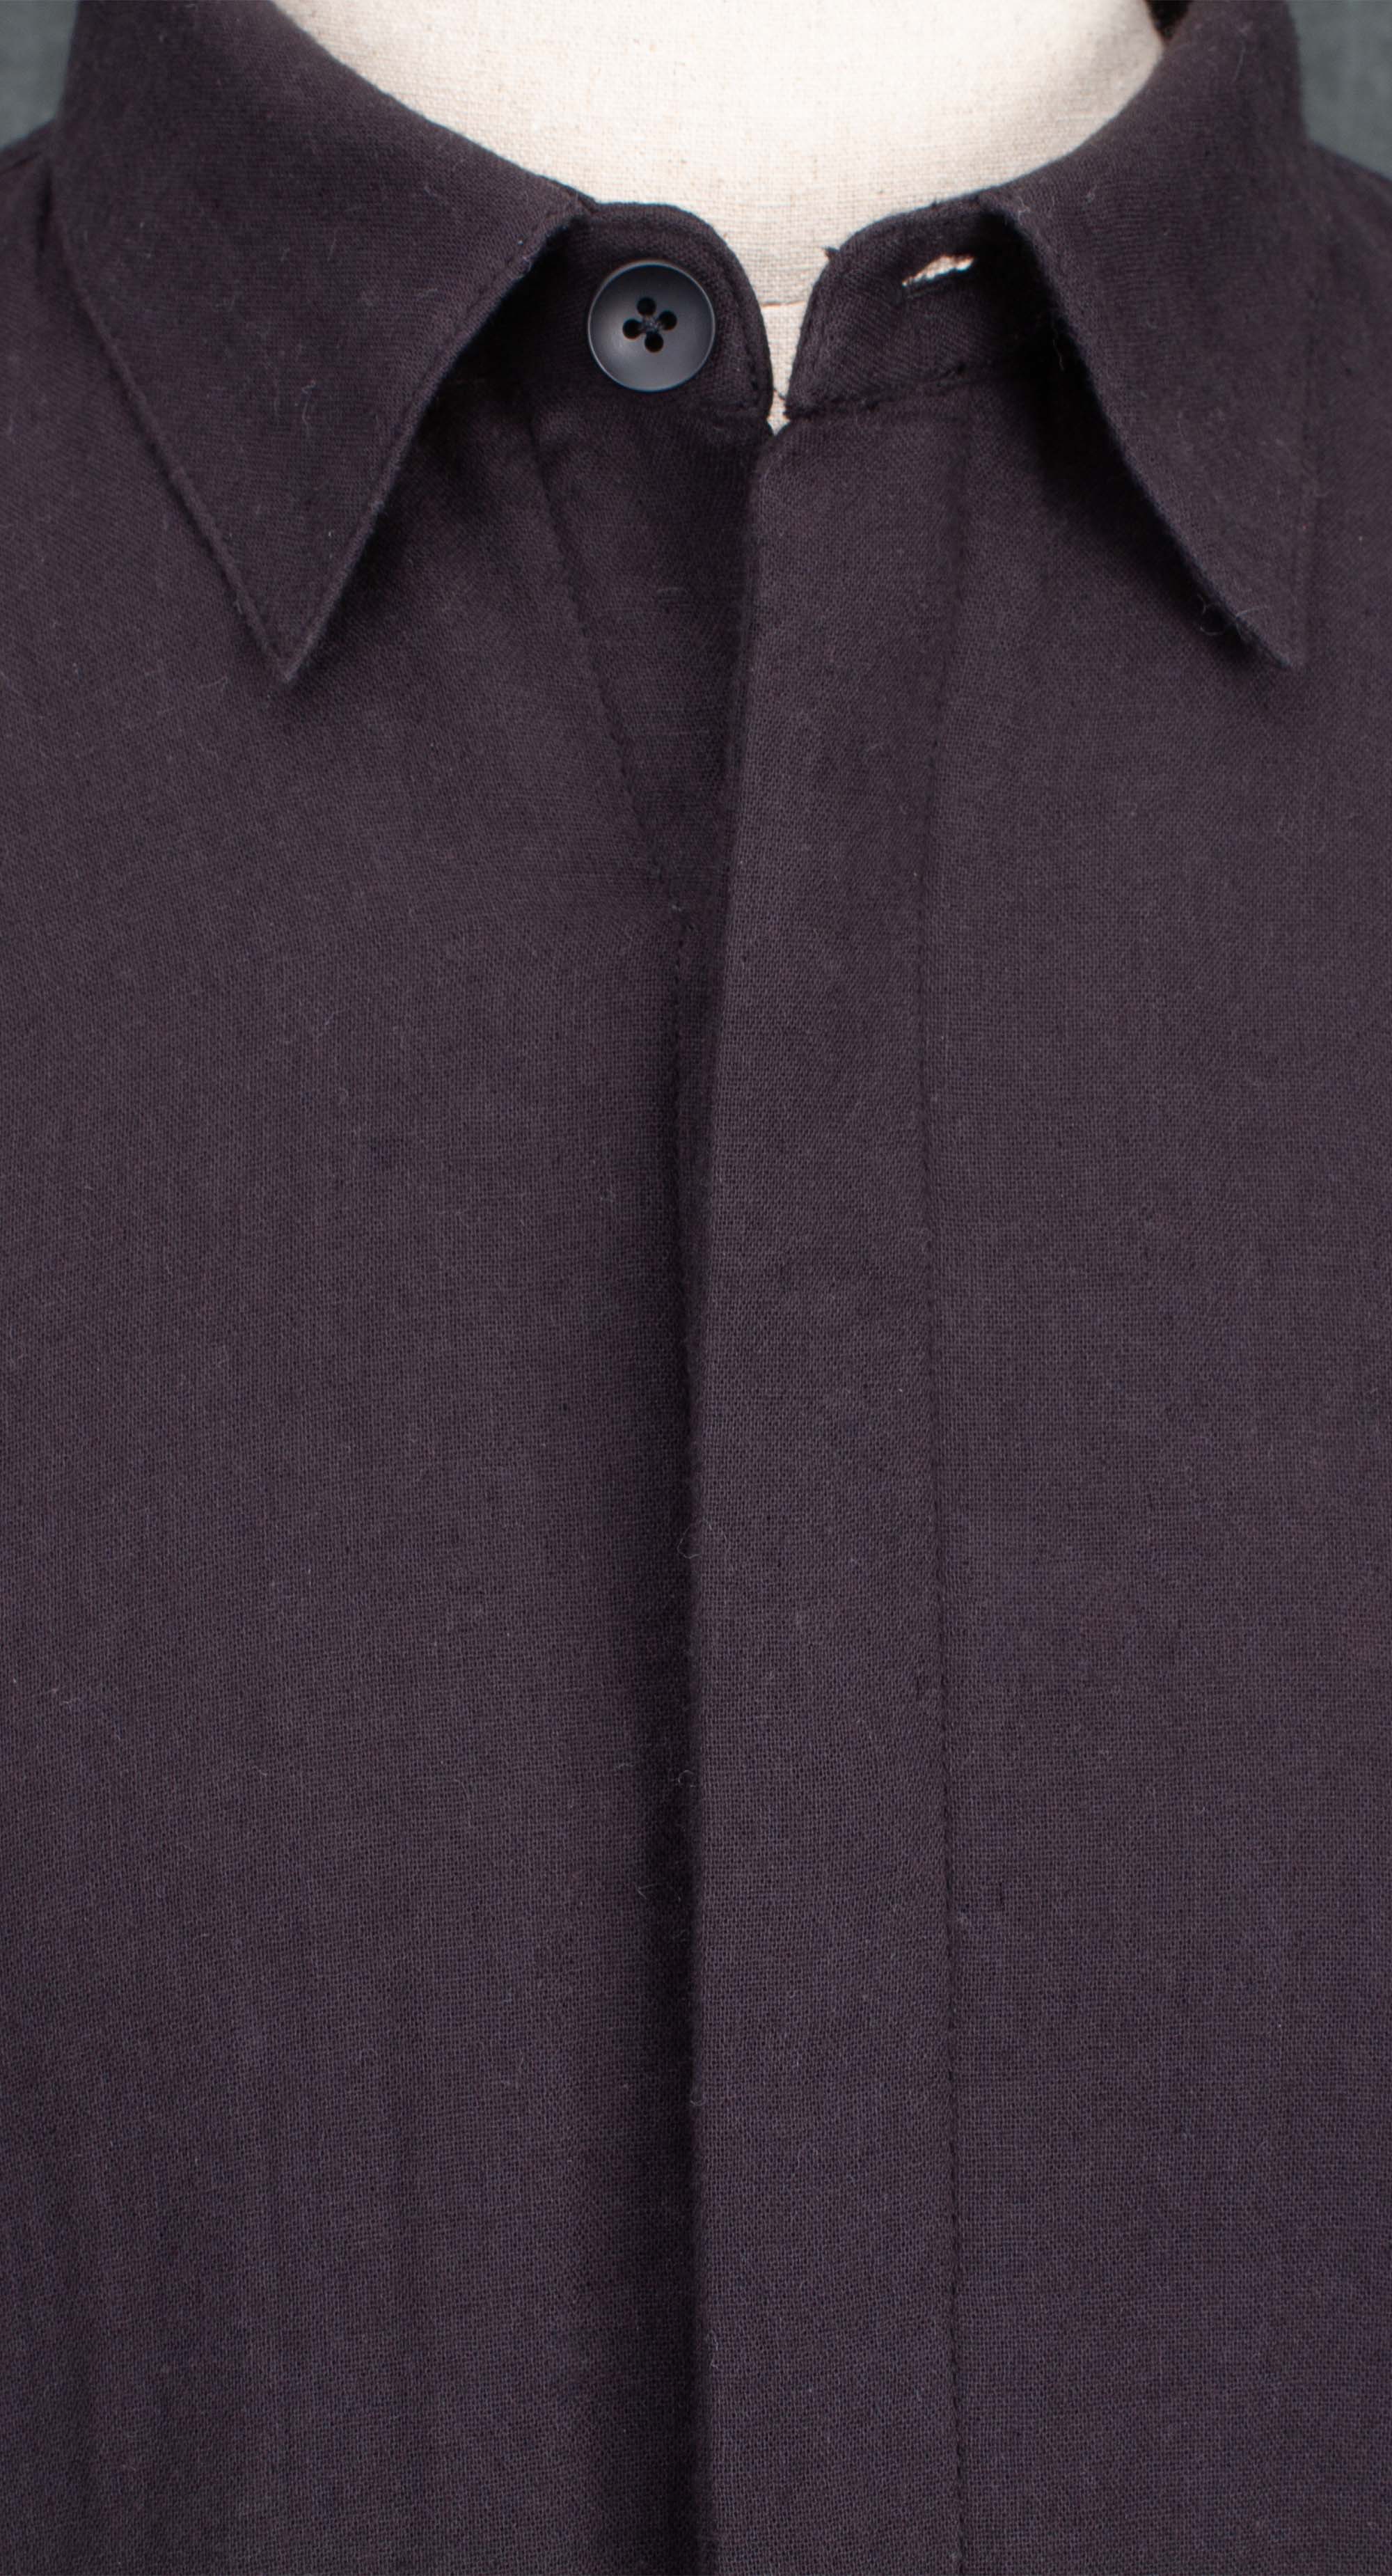 히든버튼 루즈 핏 셔츠 블랙